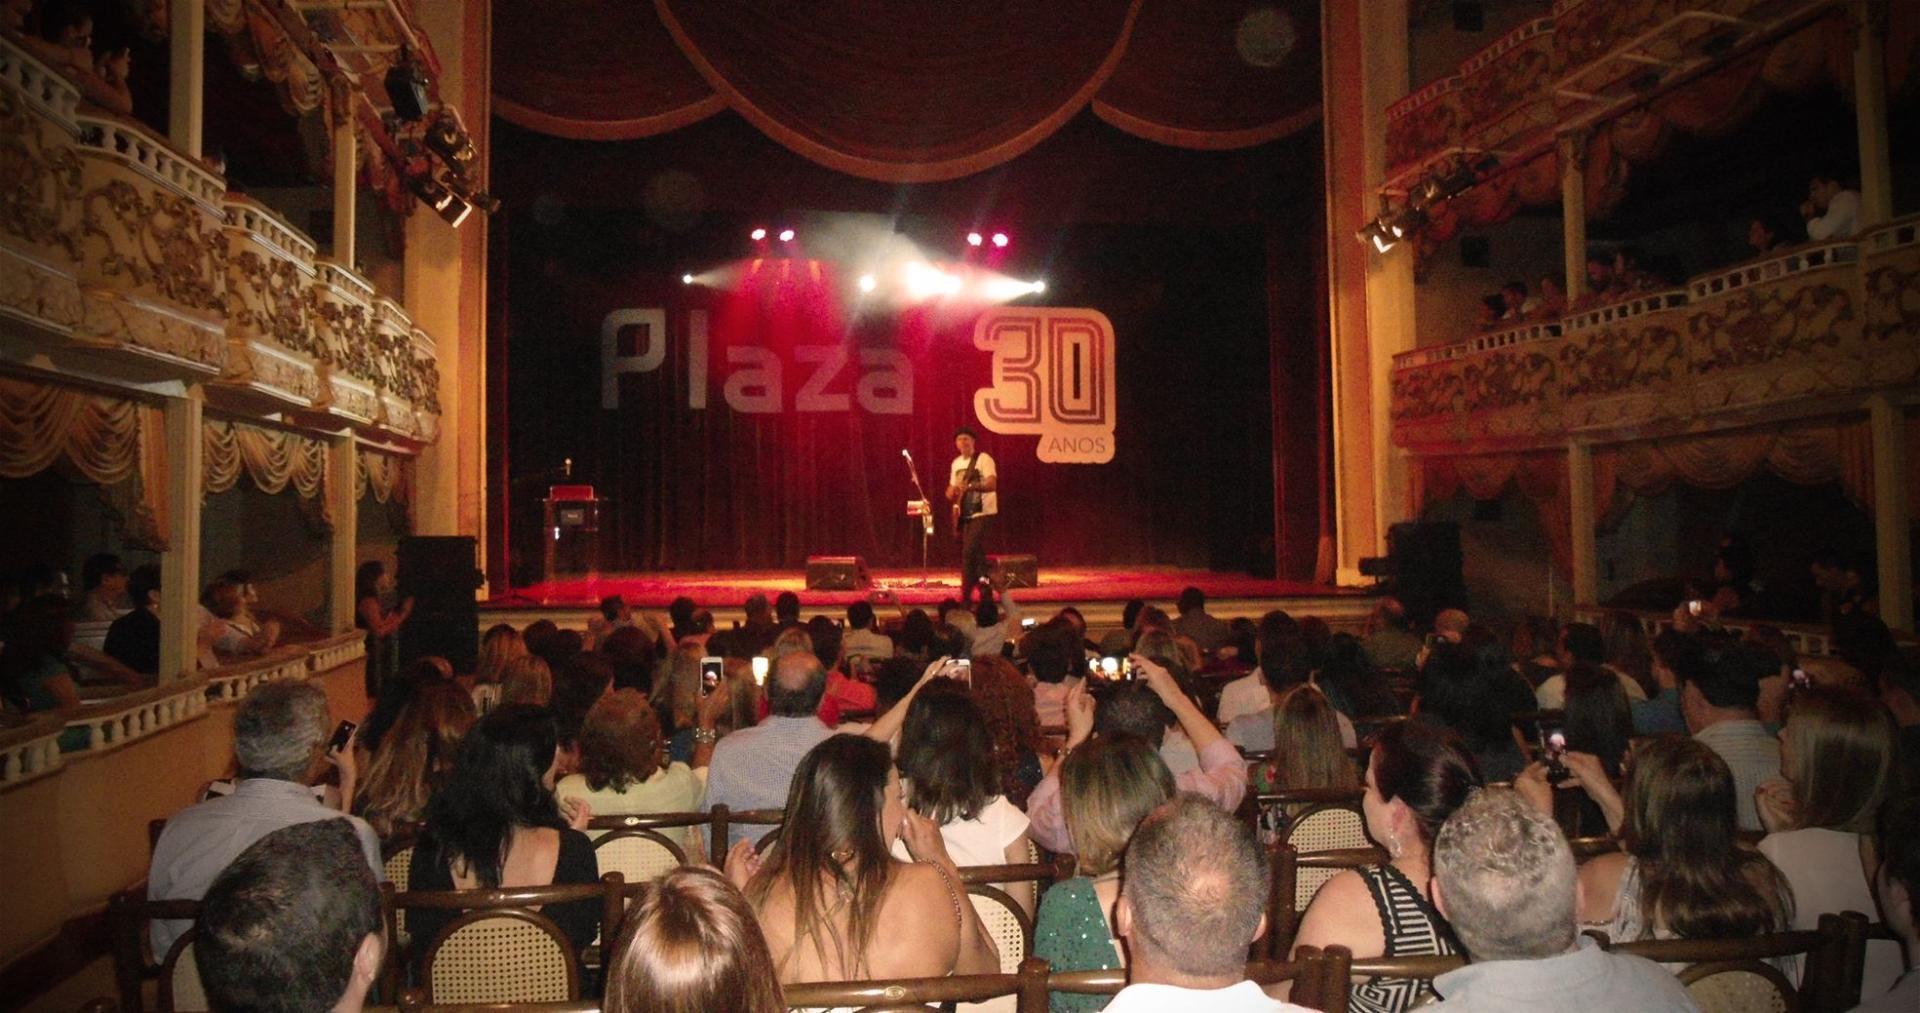 Evento de 30 anos Shopping Plaza Niterói – Agência DosReis Live Marketing